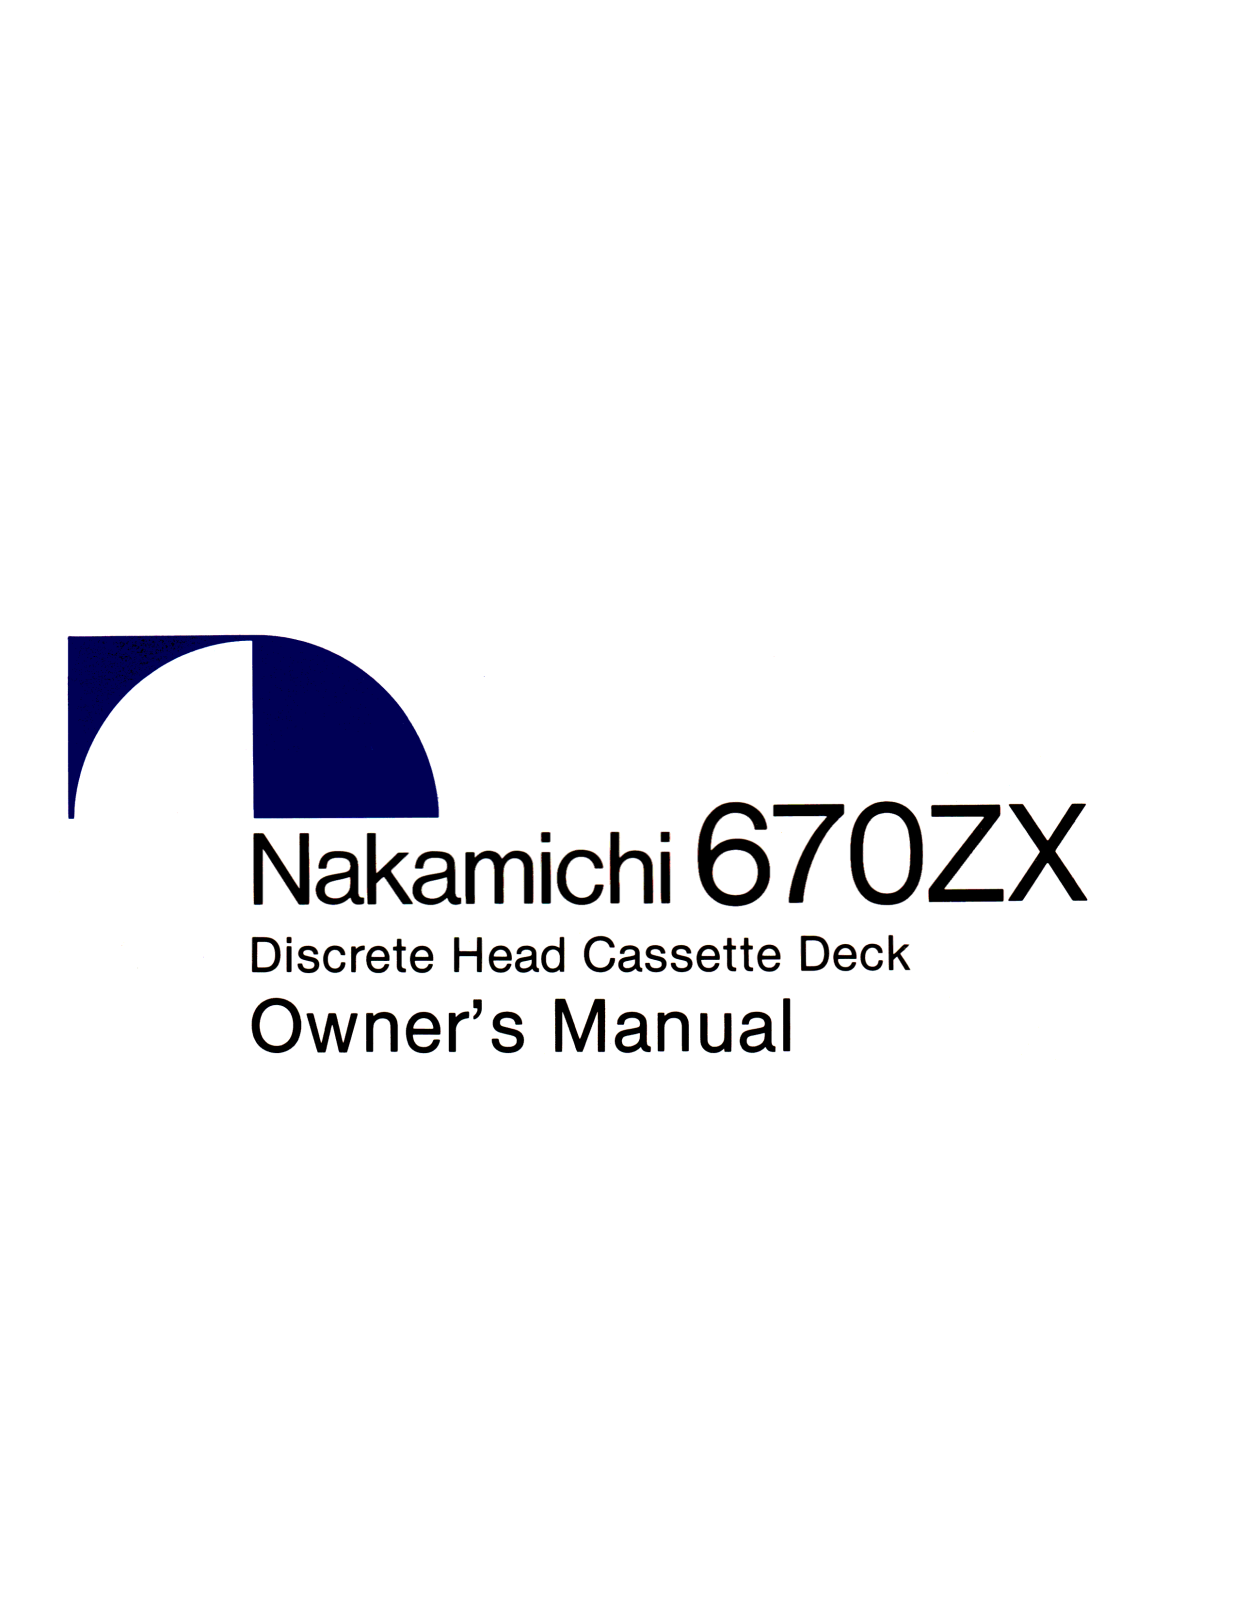 Nakamichi 670ZX User Manual